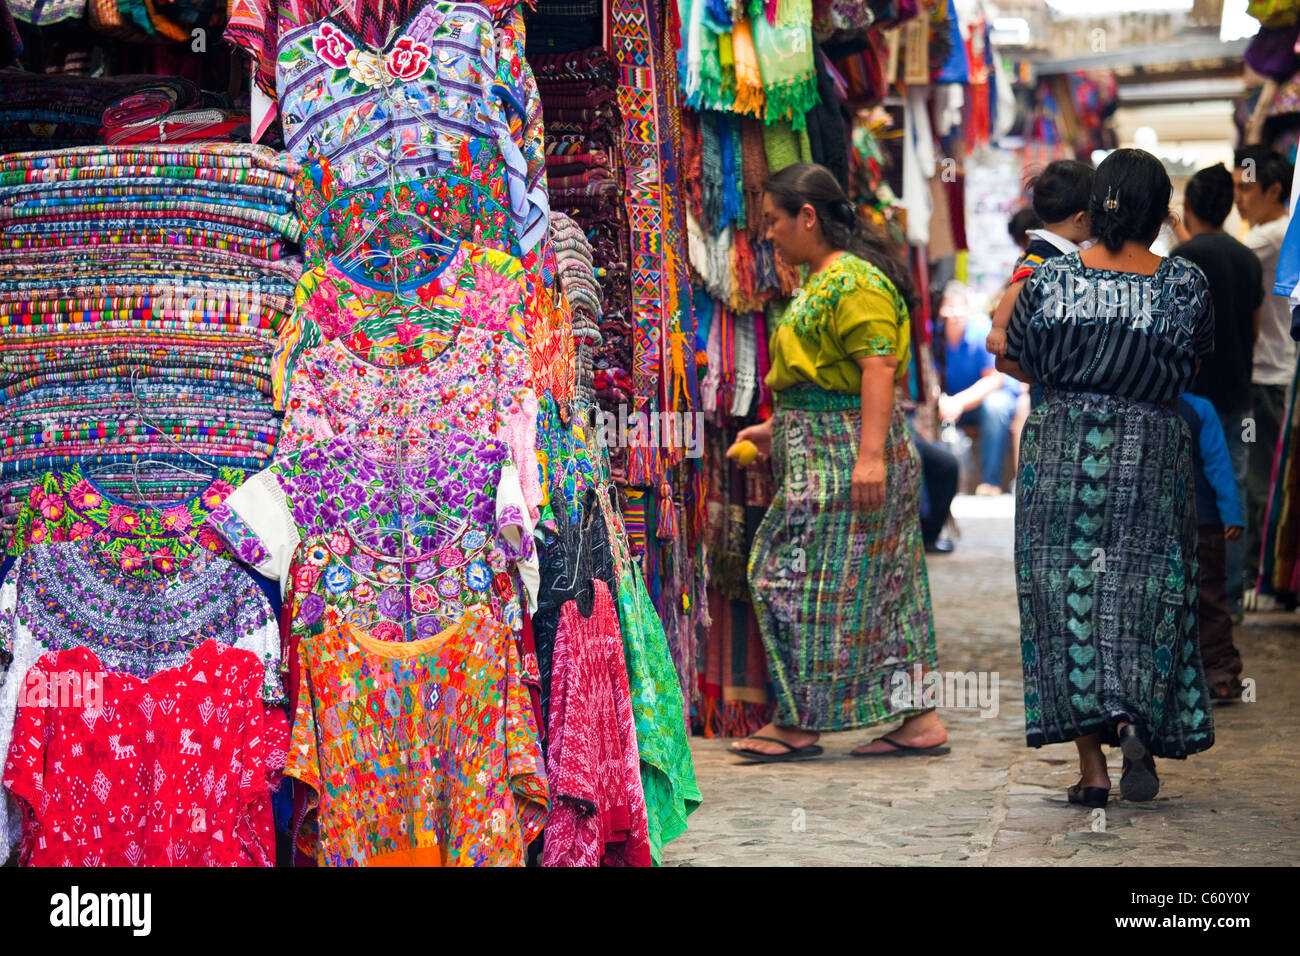 Mercado de Artesanias, Handwerker-Markt, Antigua, Guatemala Stockfoto